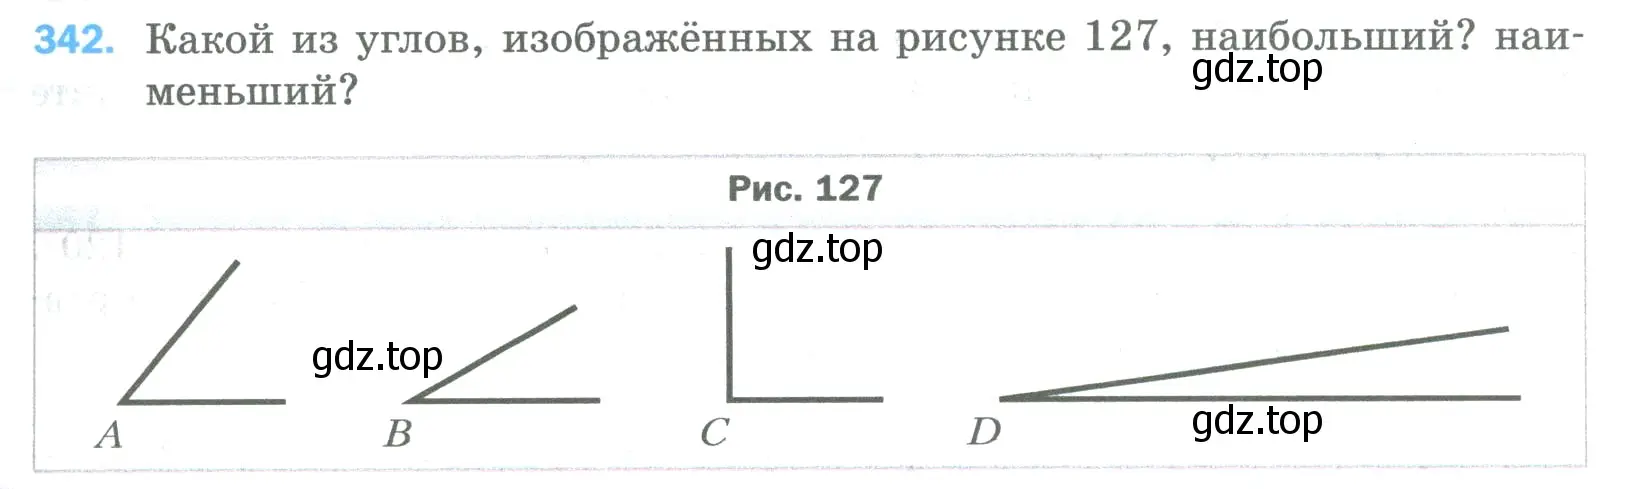 Условие номер 342 (страница 91) гдз по математике 5 класс Мерзляк, Полонский, учебник